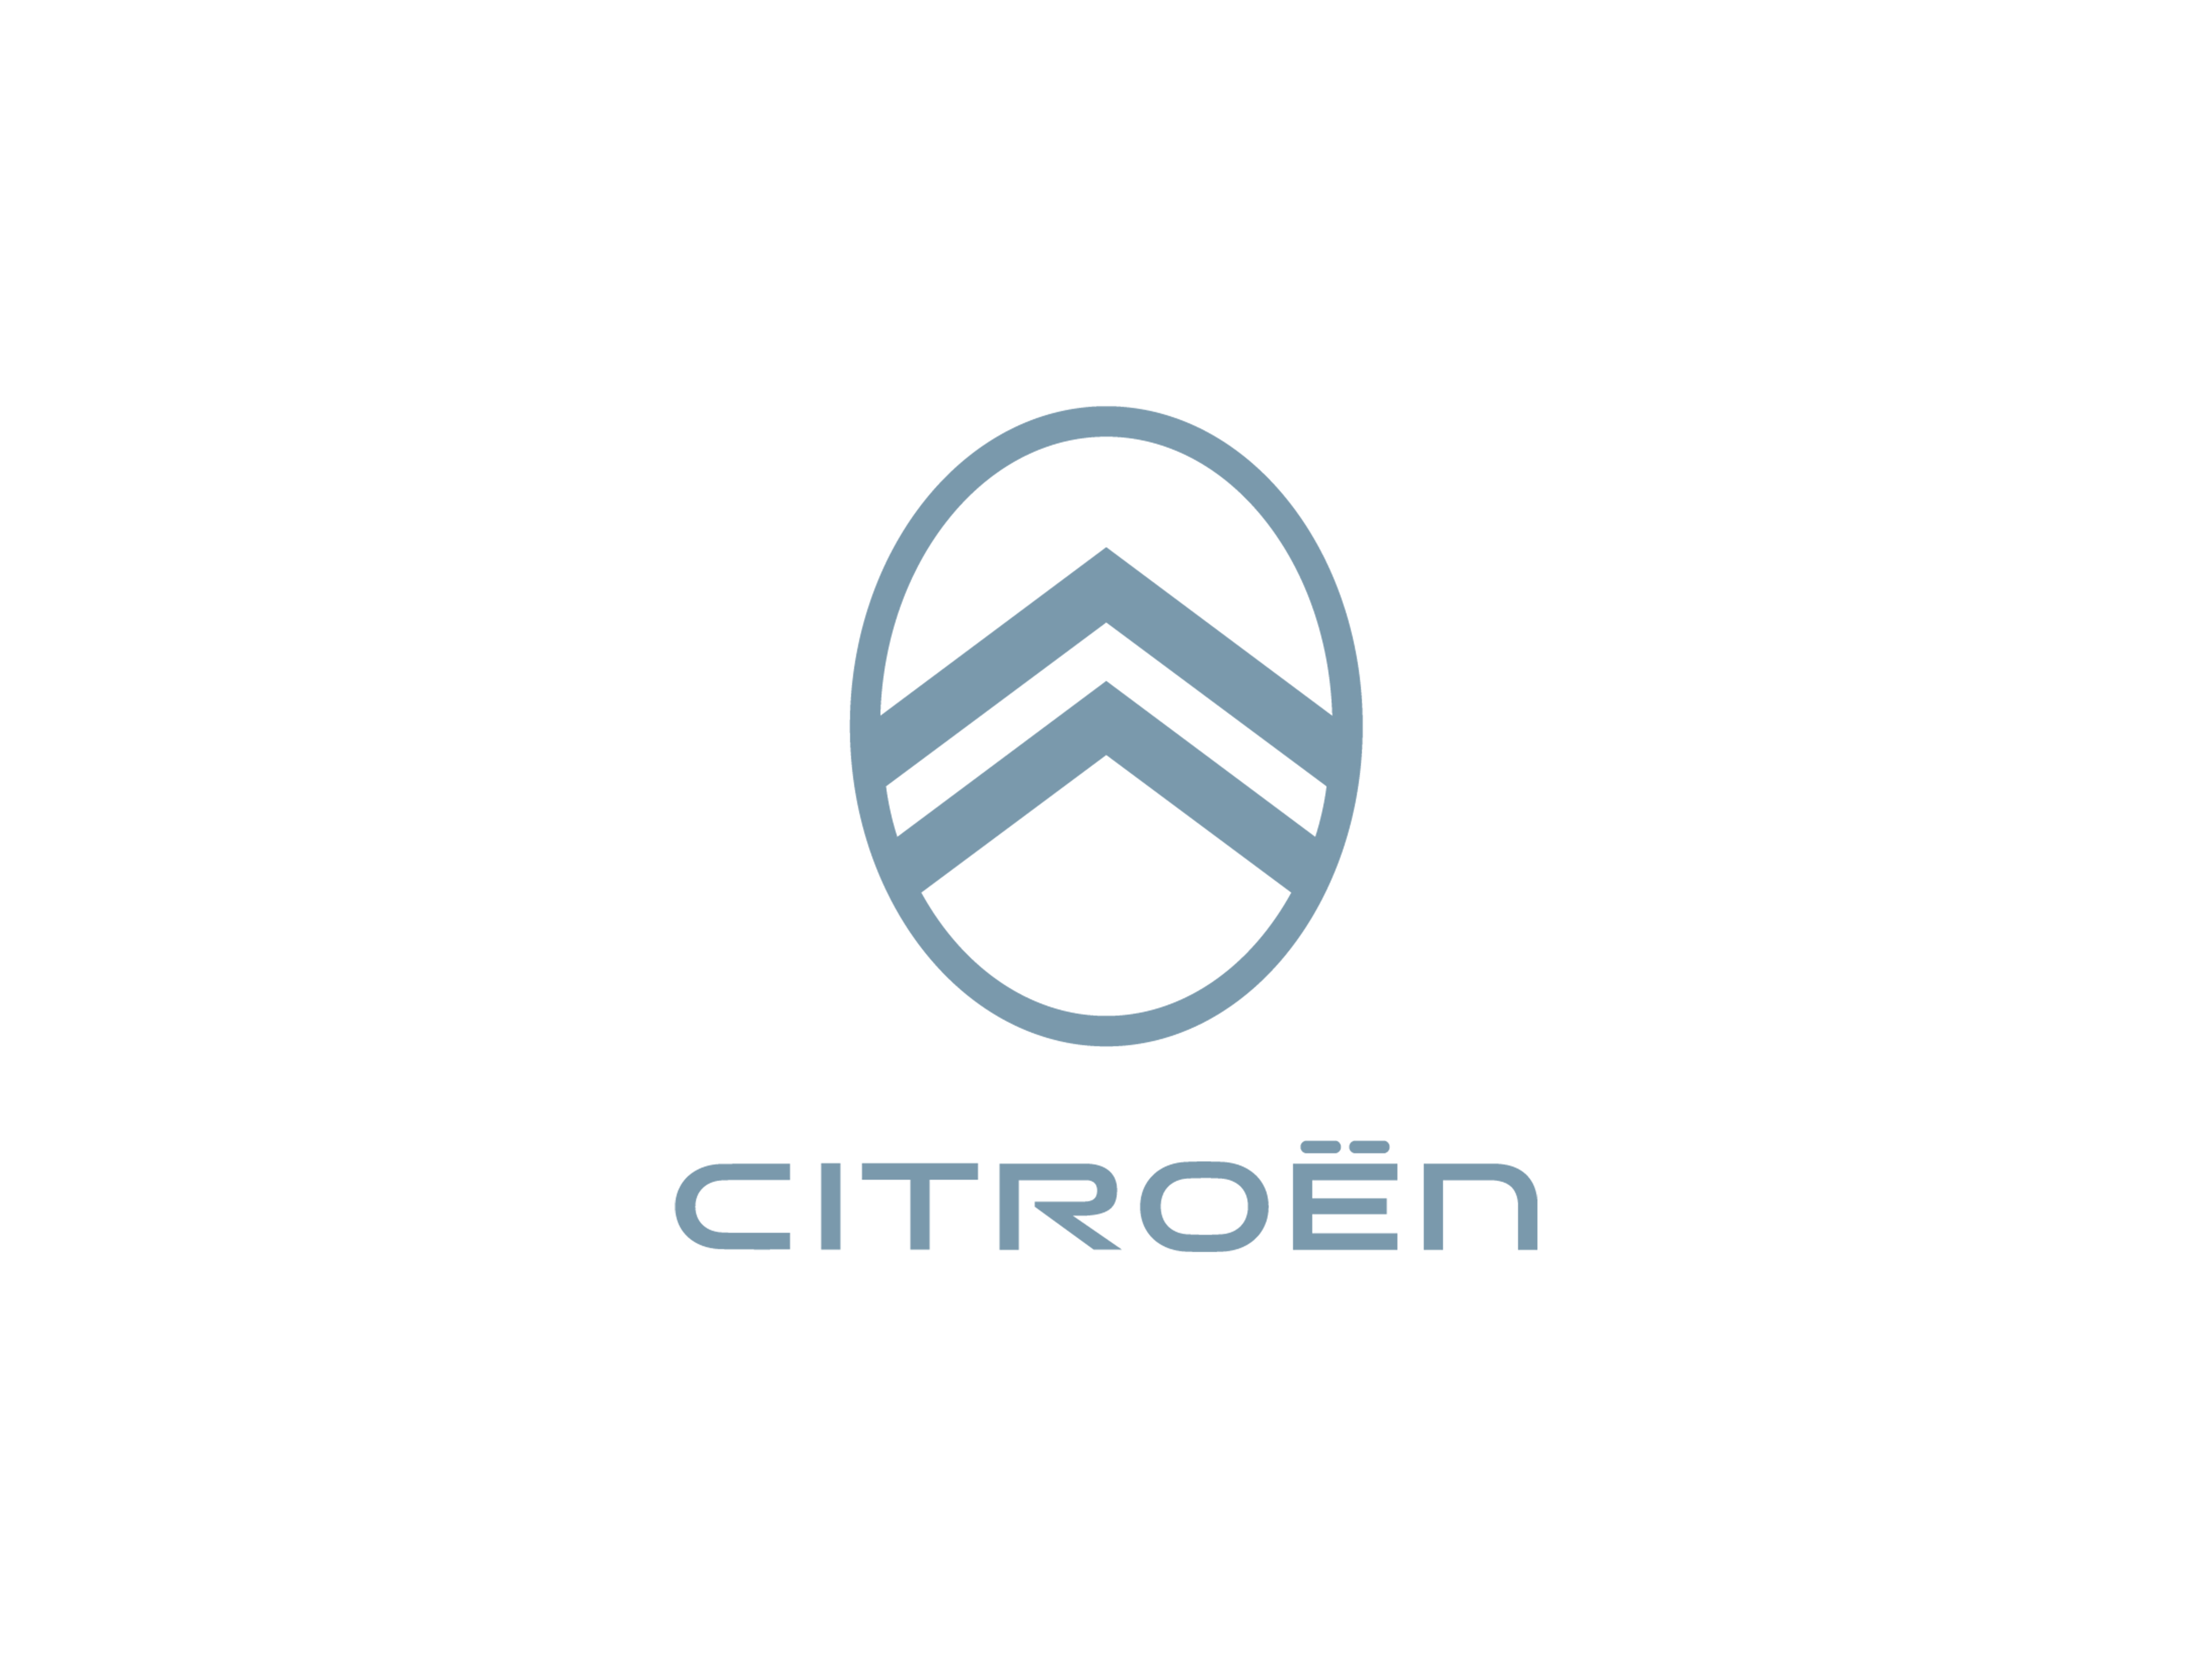 Neues Citroën Logo von 2022 in Taubenblau